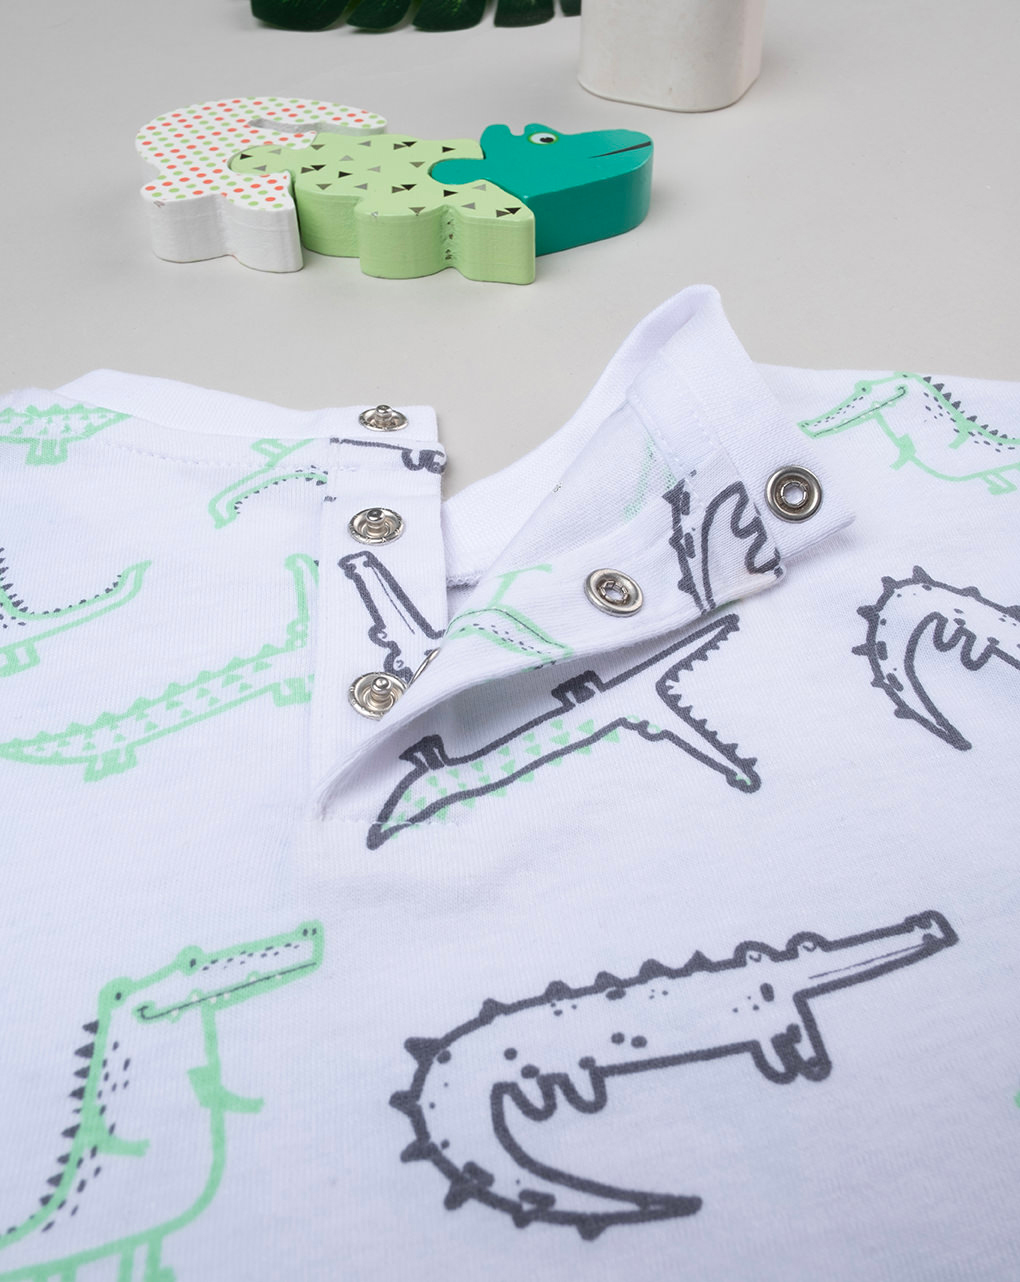 βρεφικό t-shirt λευκό με δεινόσαυρους για αγόρι - Prénatal